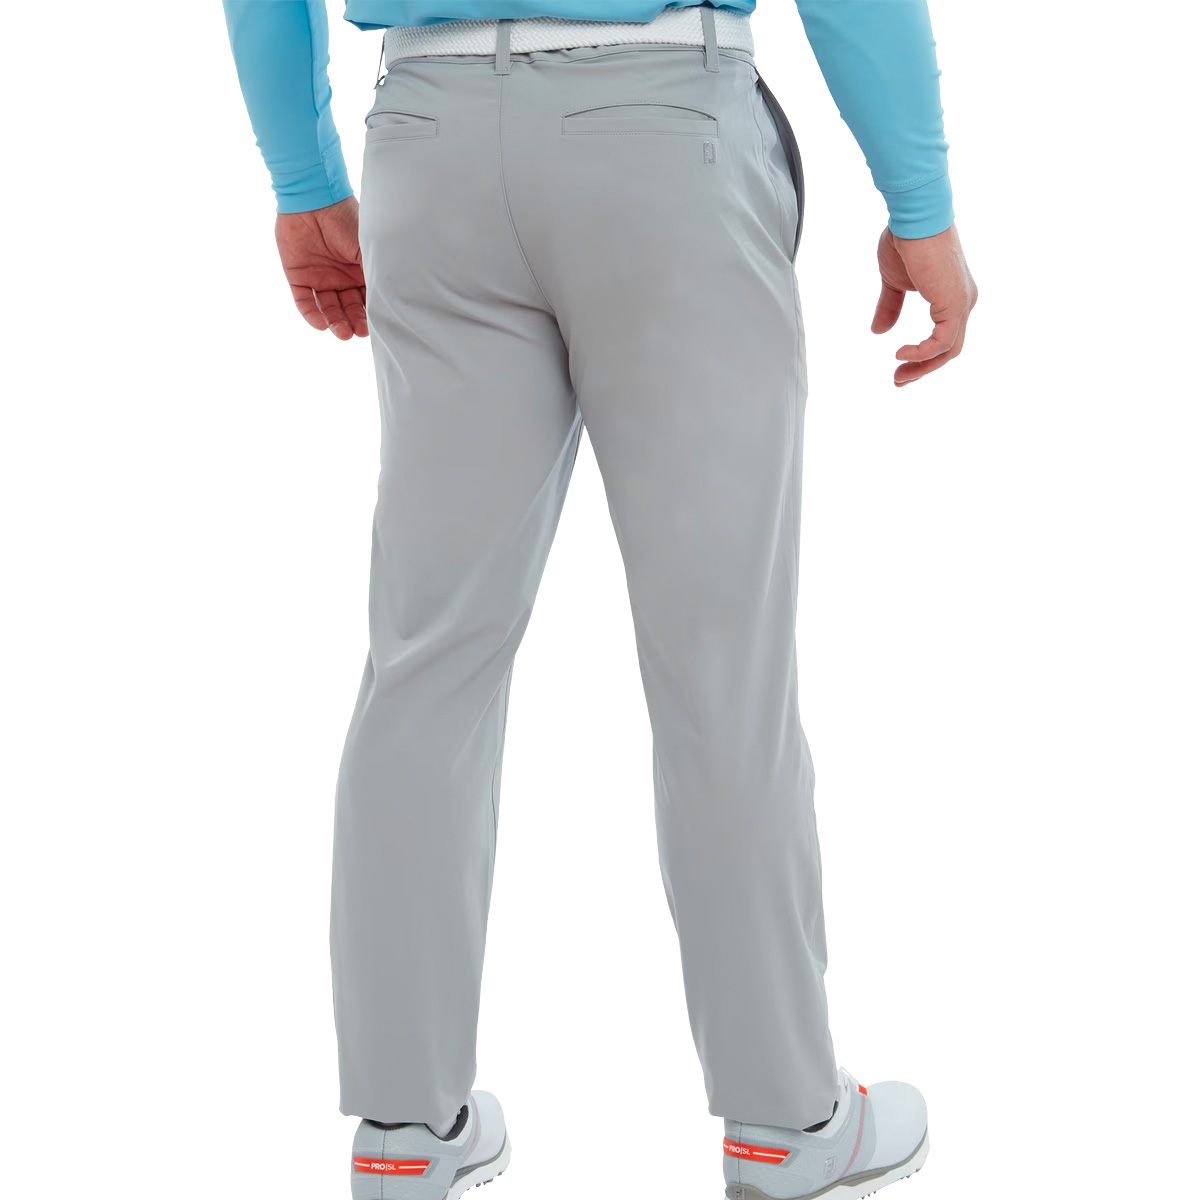 New FOOTJOY Golf Trousers Grey With Stretch Size Waist 36 Leg 31 92293   eBay